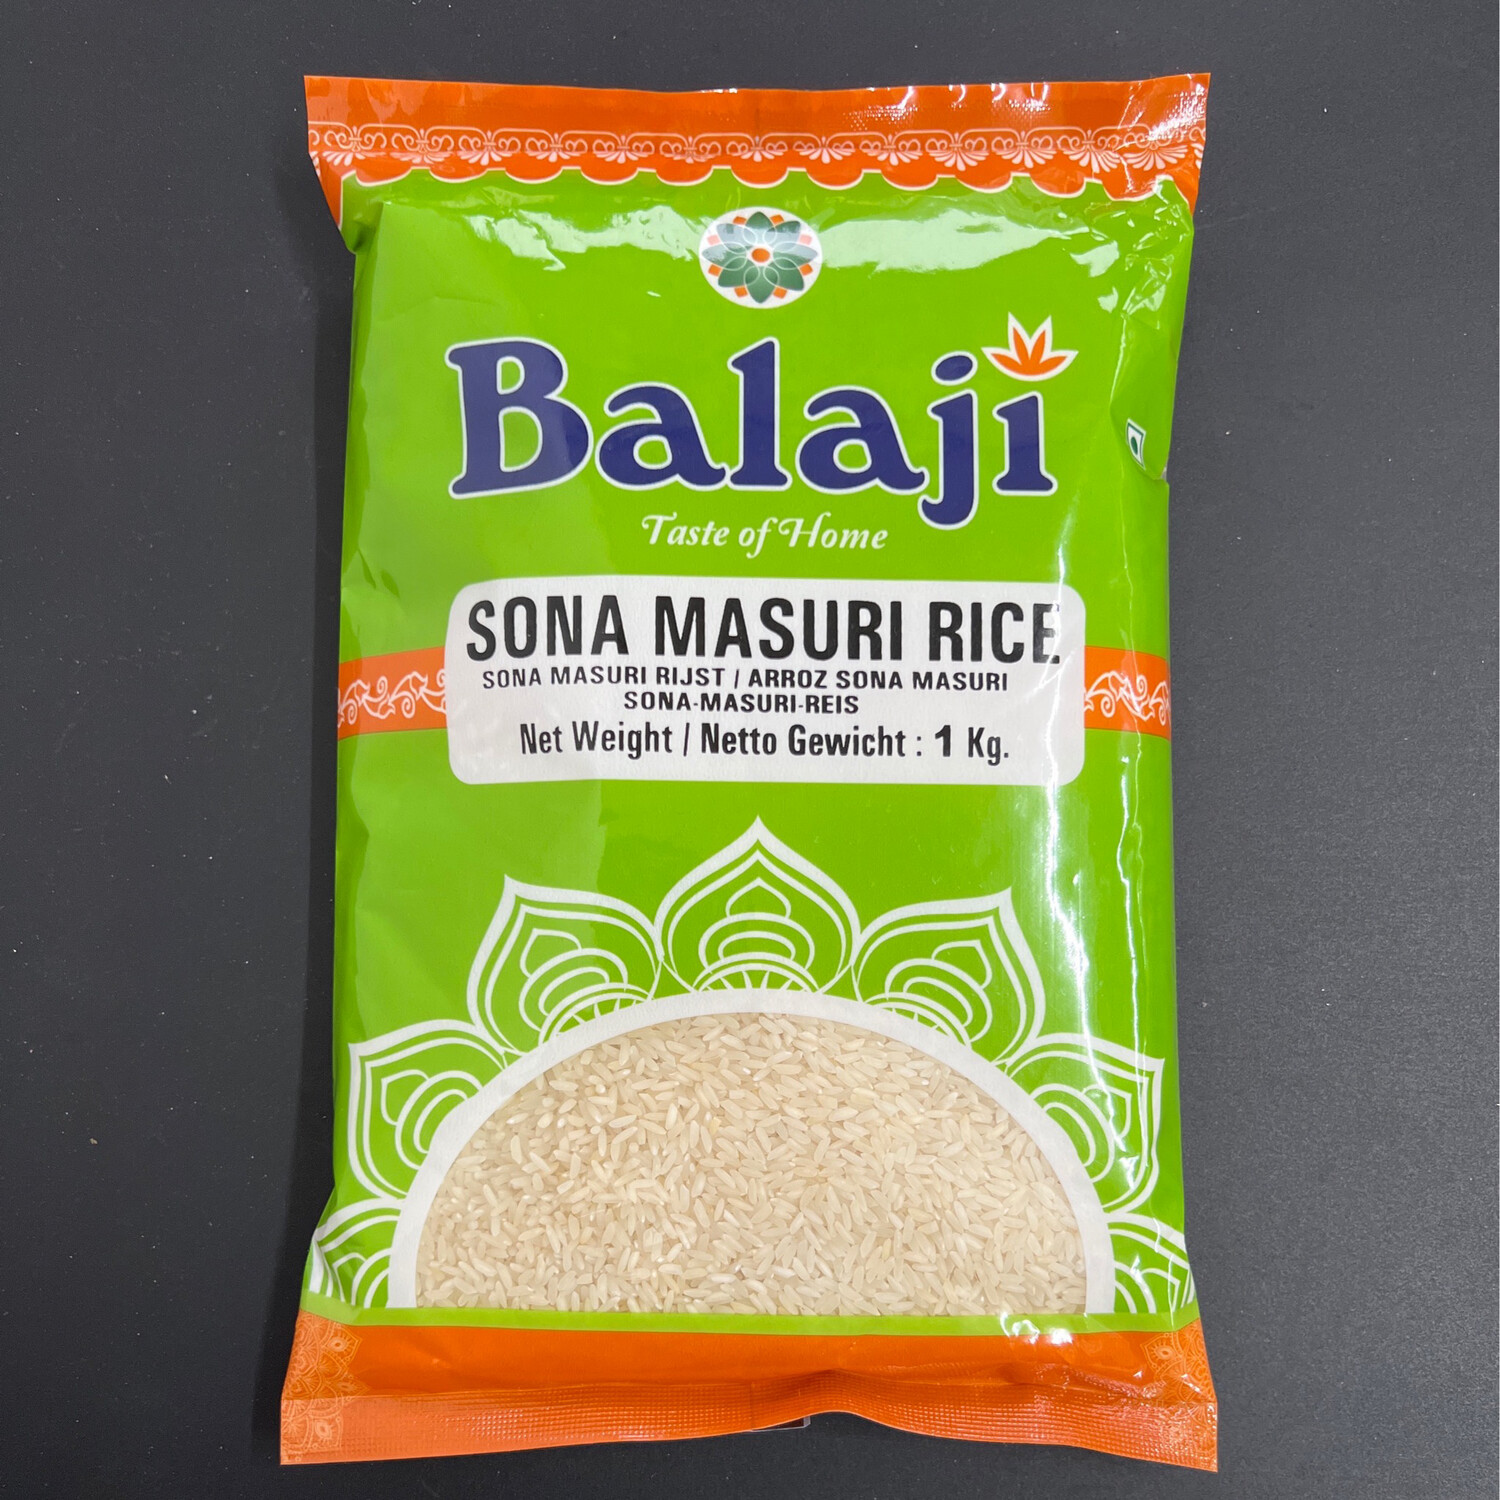 Balaji Sona Masuri Rice 500g